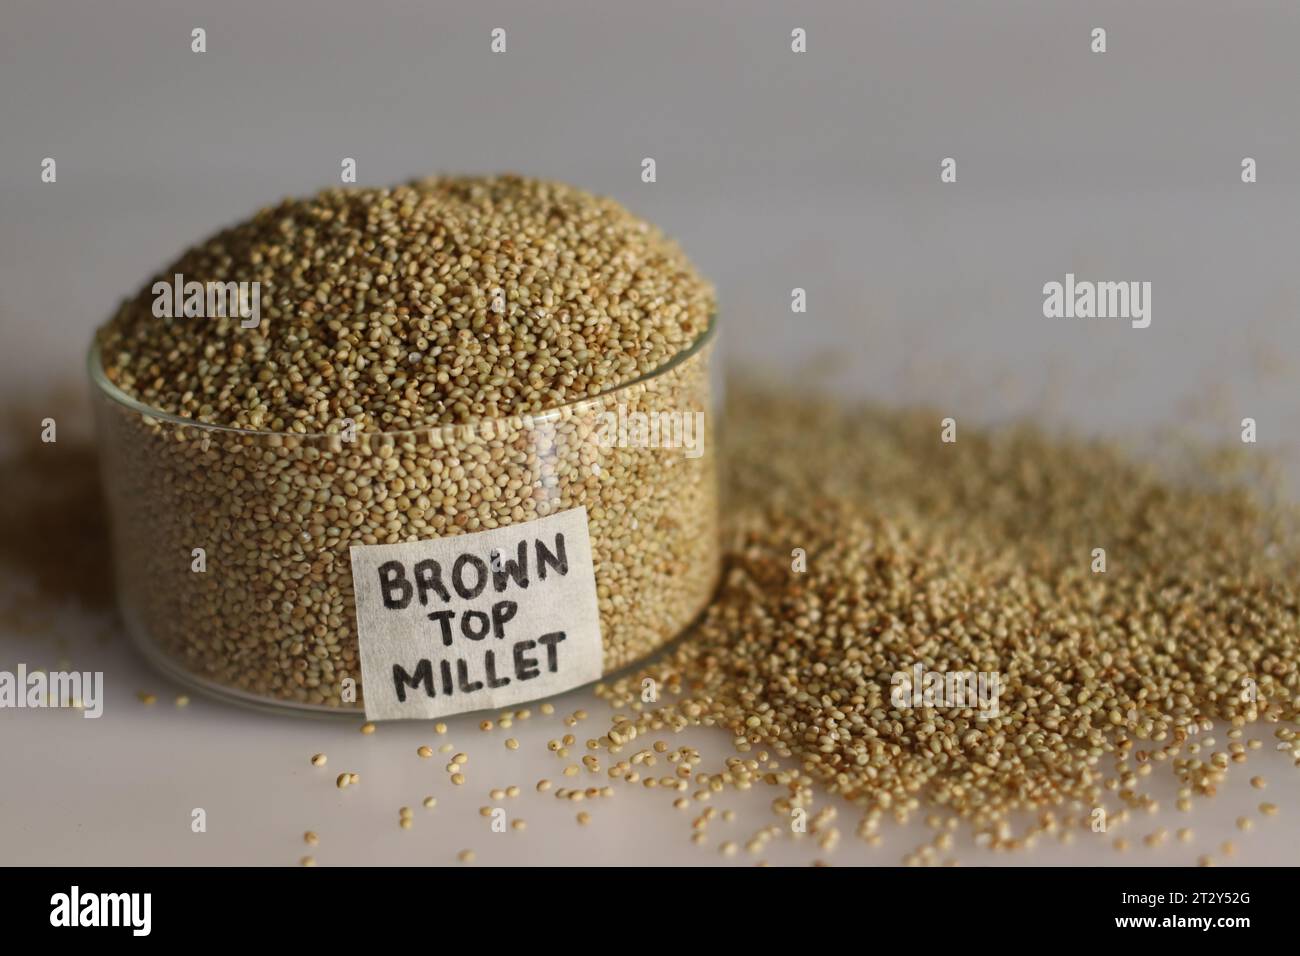 Gros plan de grains de millet browntop dans un bol en verre vierge avec étiquette sur elle remplie à bord, mettant en valeur ses grains sains, idéal pour illustratin Banque D'Images